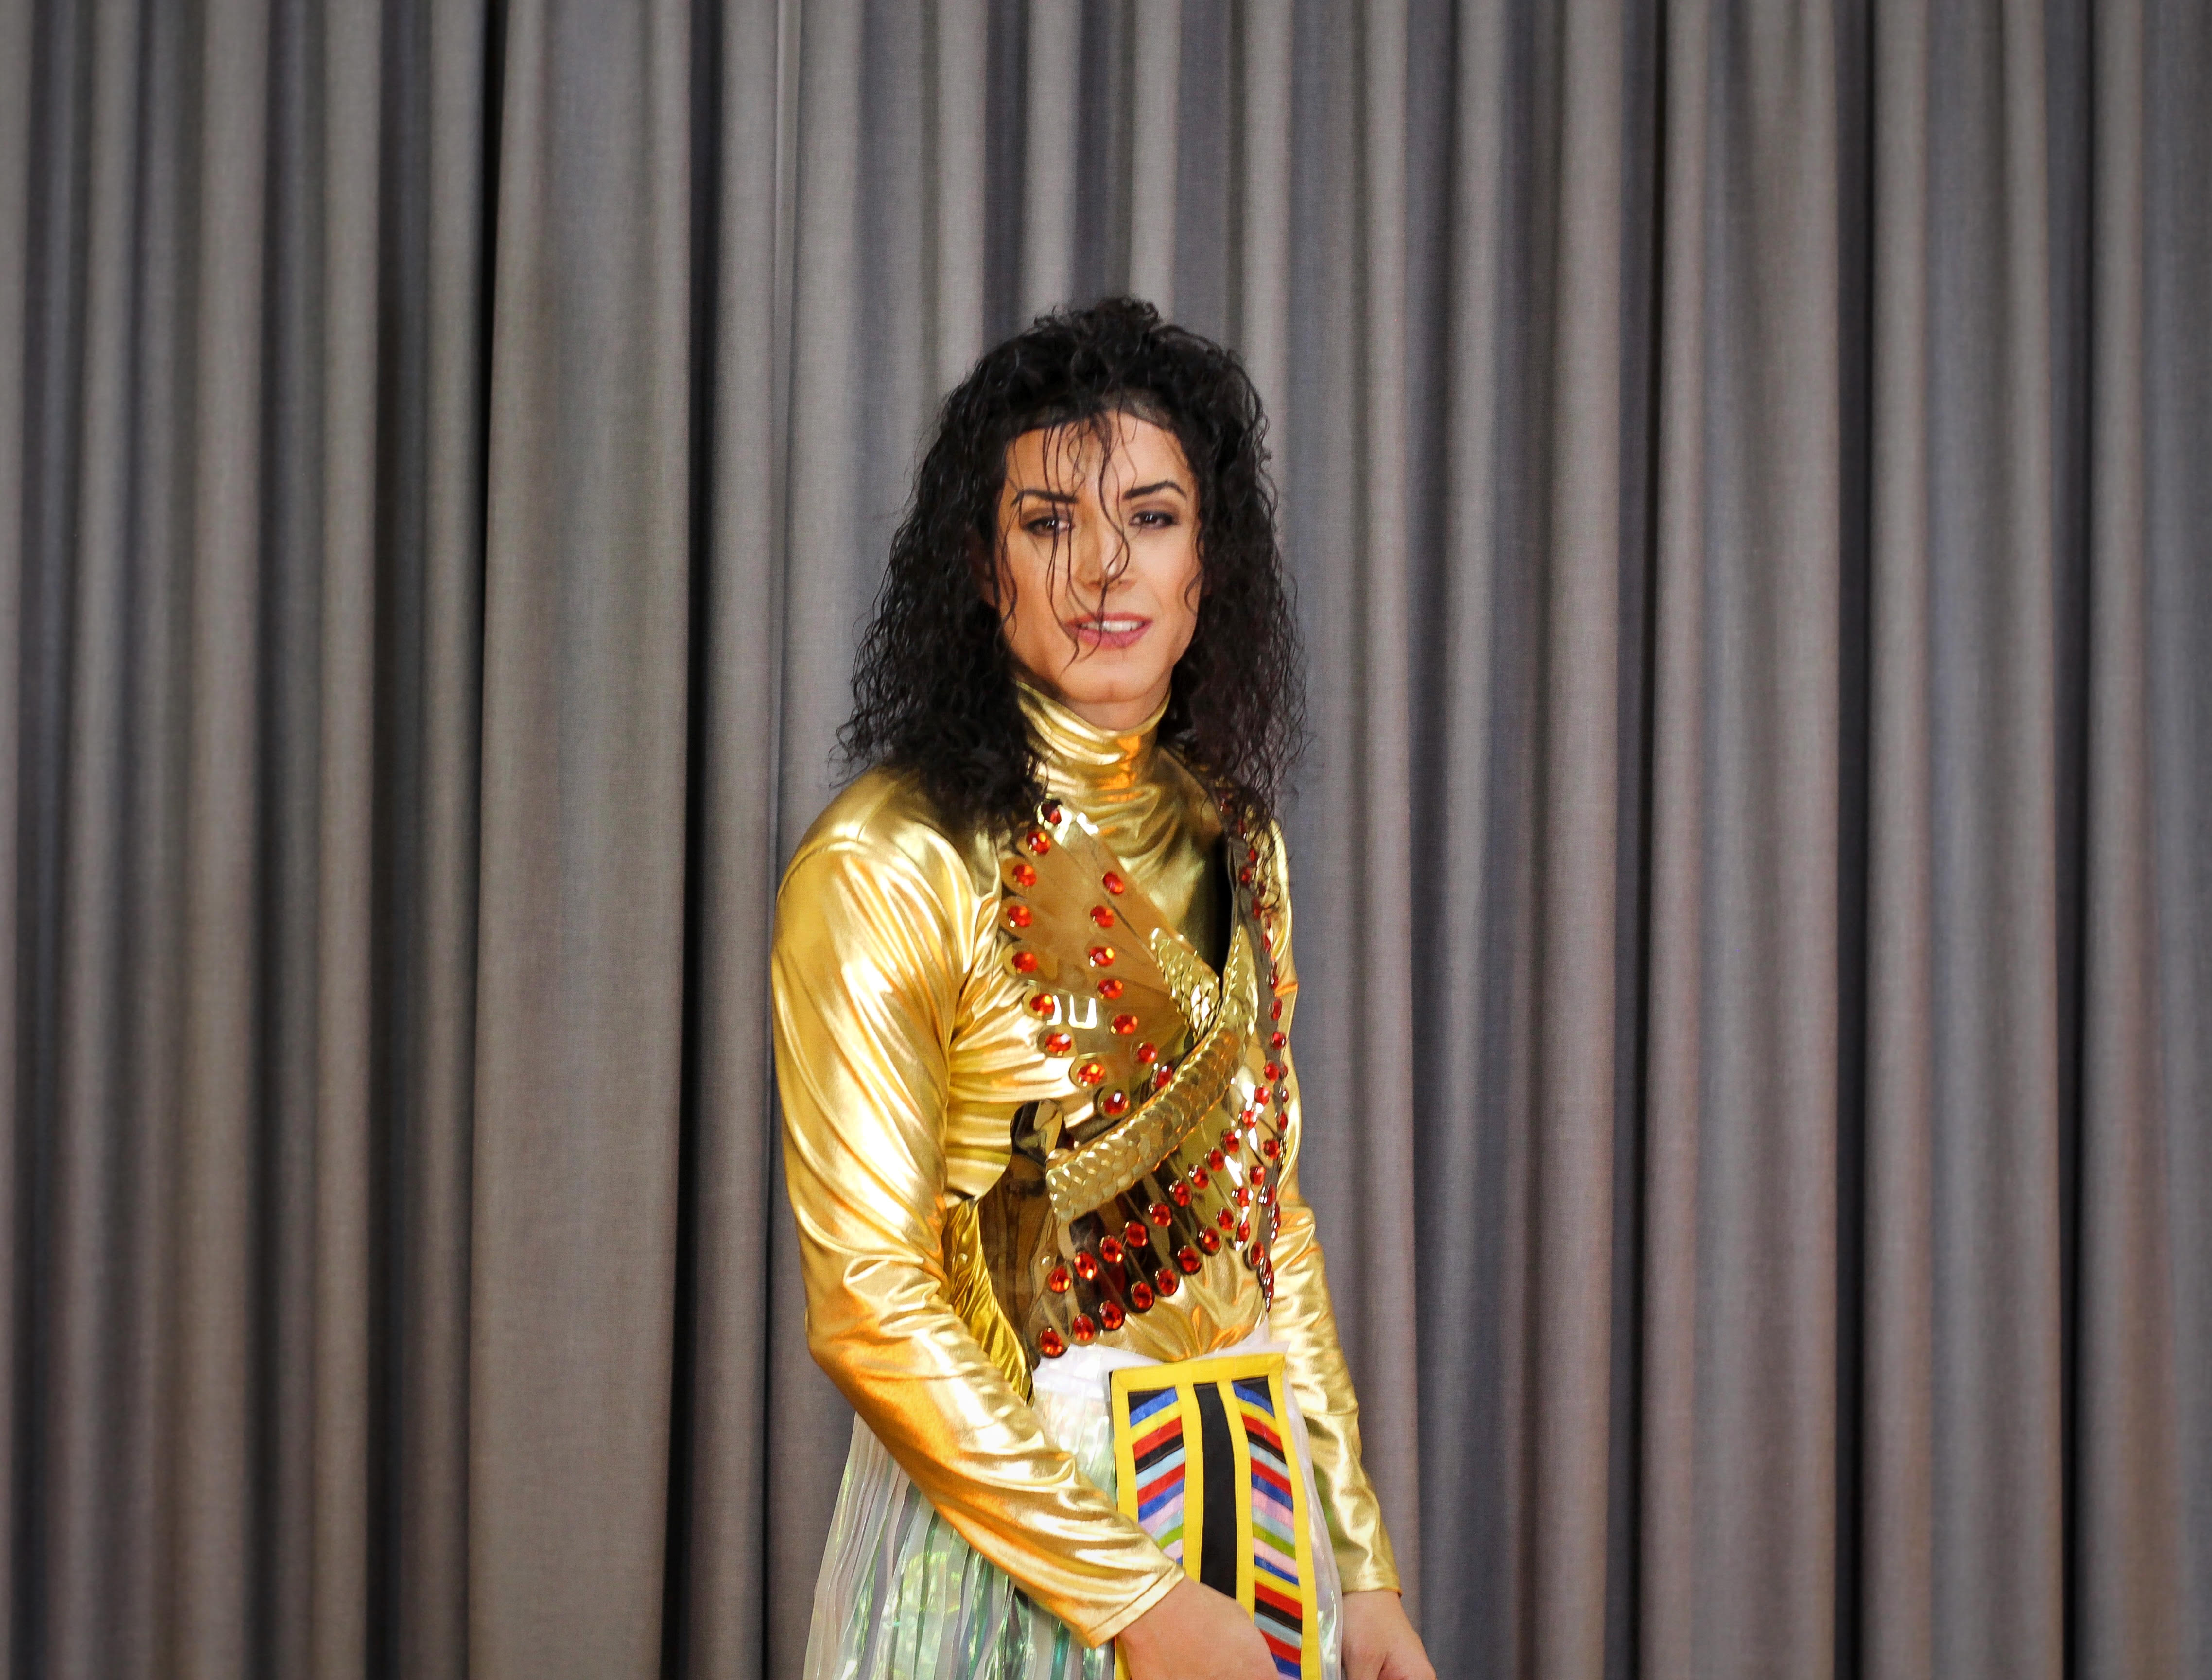 SacMjj, imitador de Michael Jackson: “La meta es que sus hijos puedan verme”